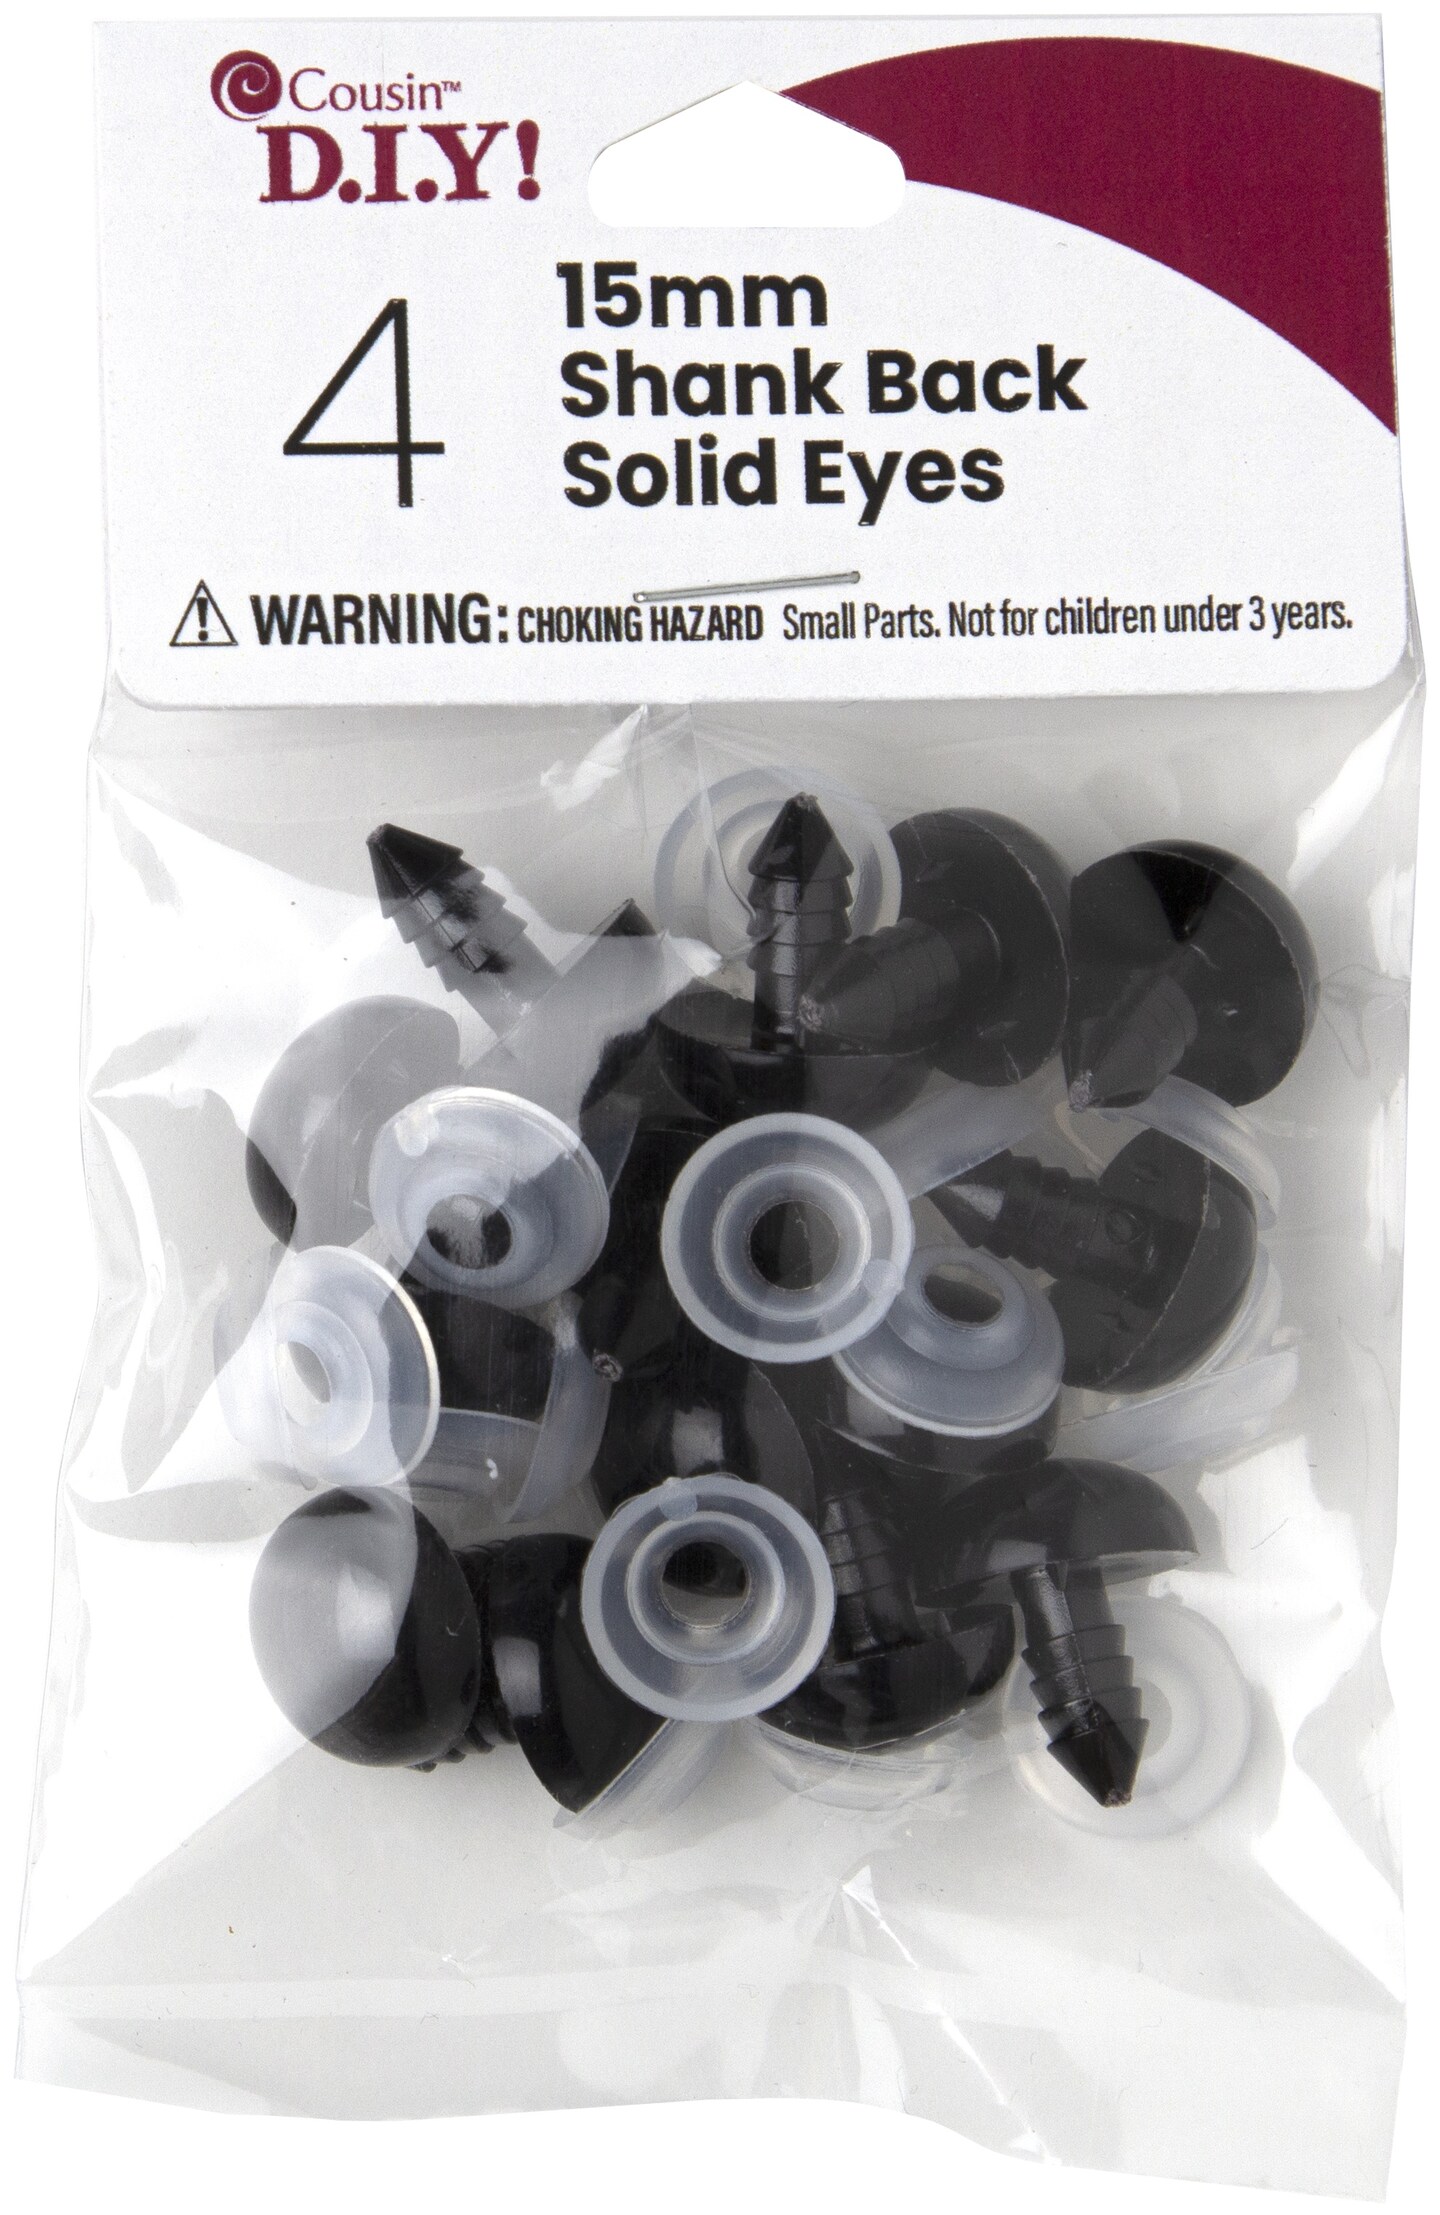 CousinDIY Shank Back Solid Eyes 15mm 4/Pkg-Black